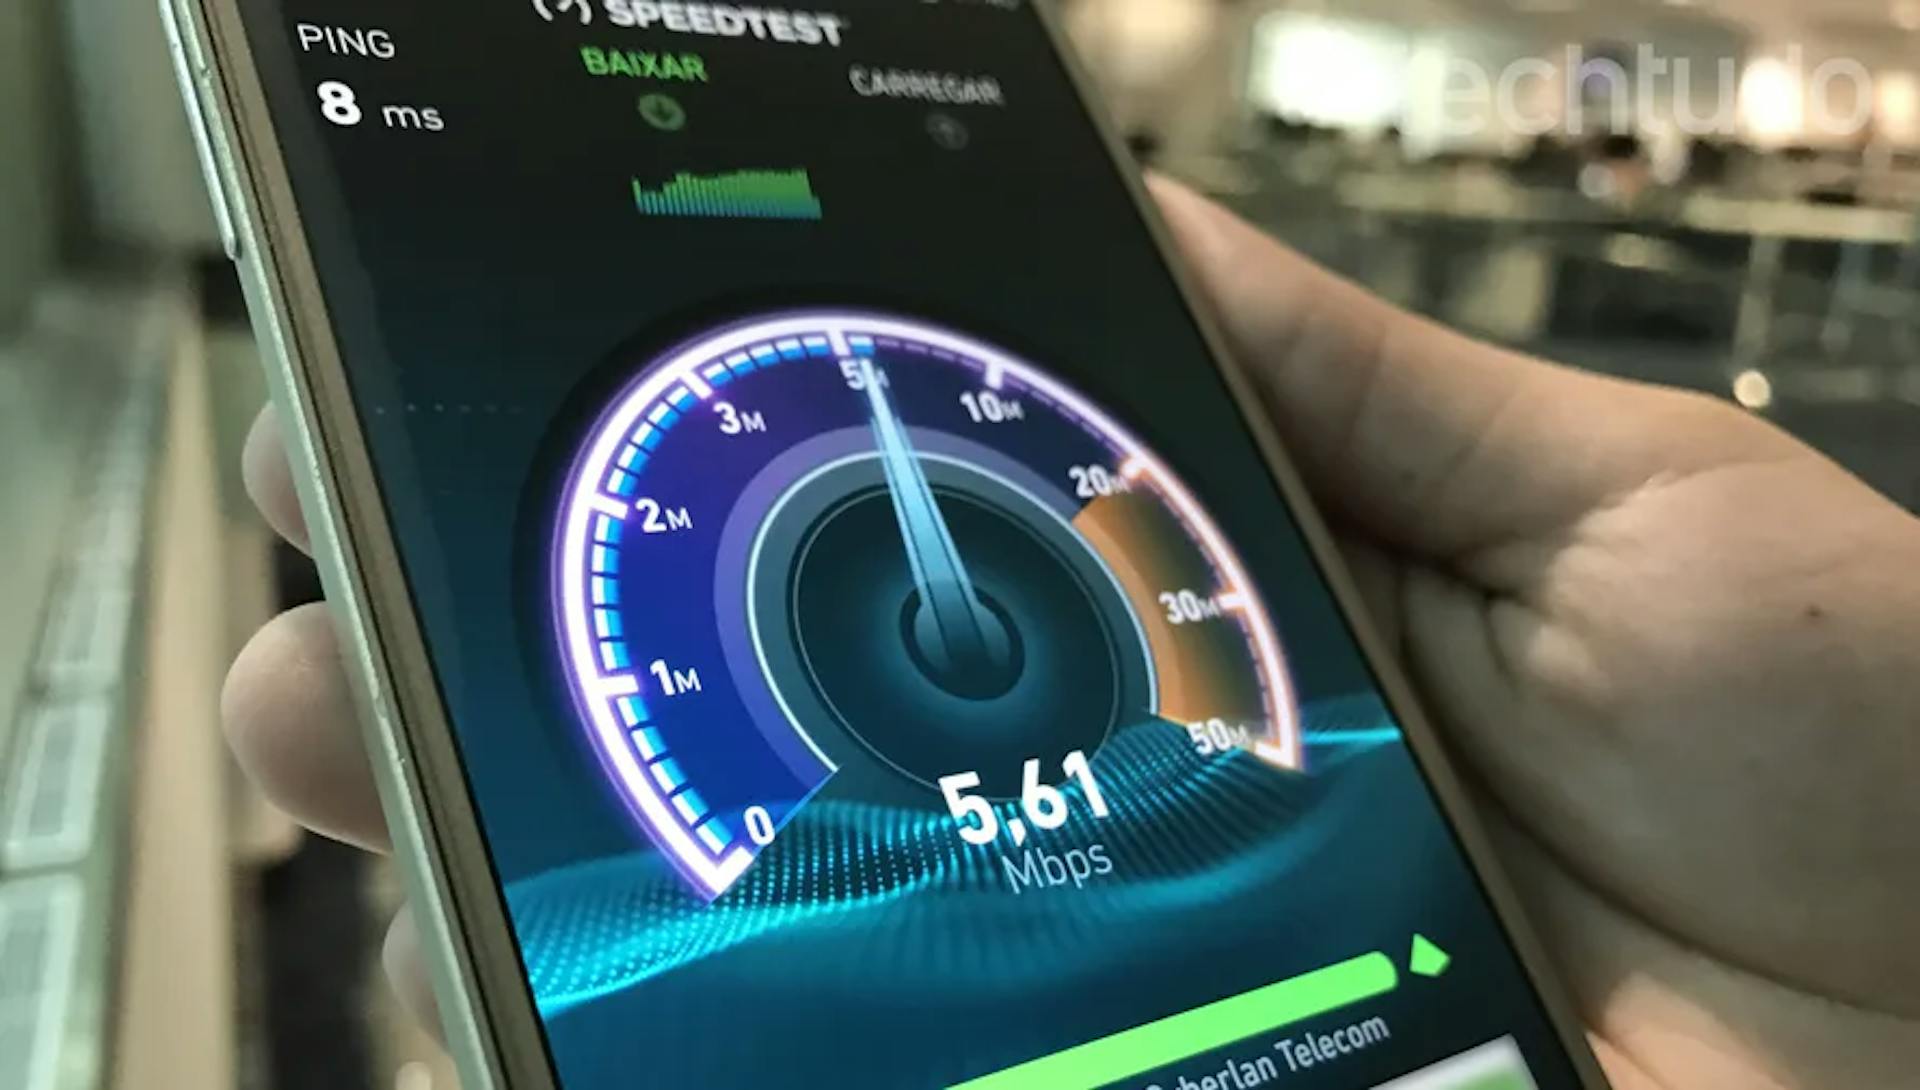 teste de velocidade na tela do celular que representa a internet rápida da claro